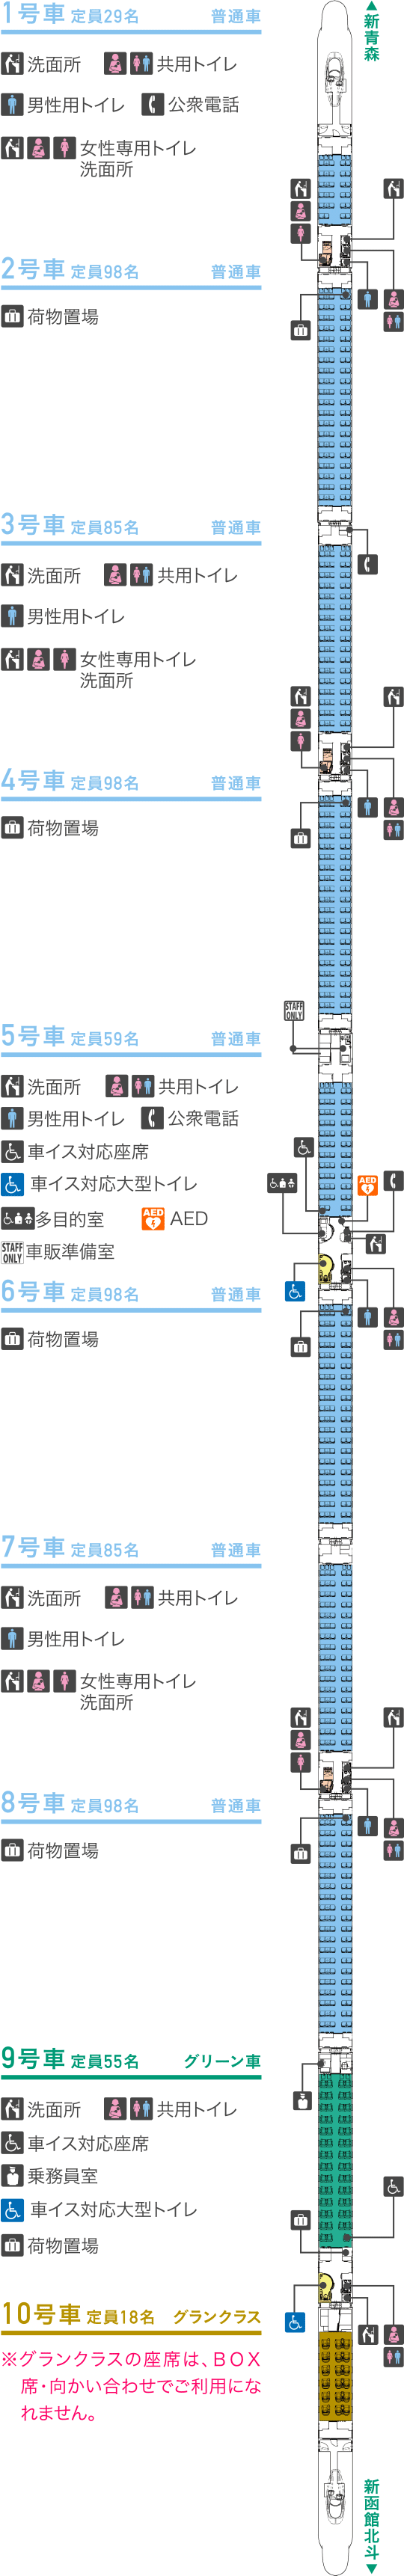 北海道新幹線「はやぶさ」車両構成